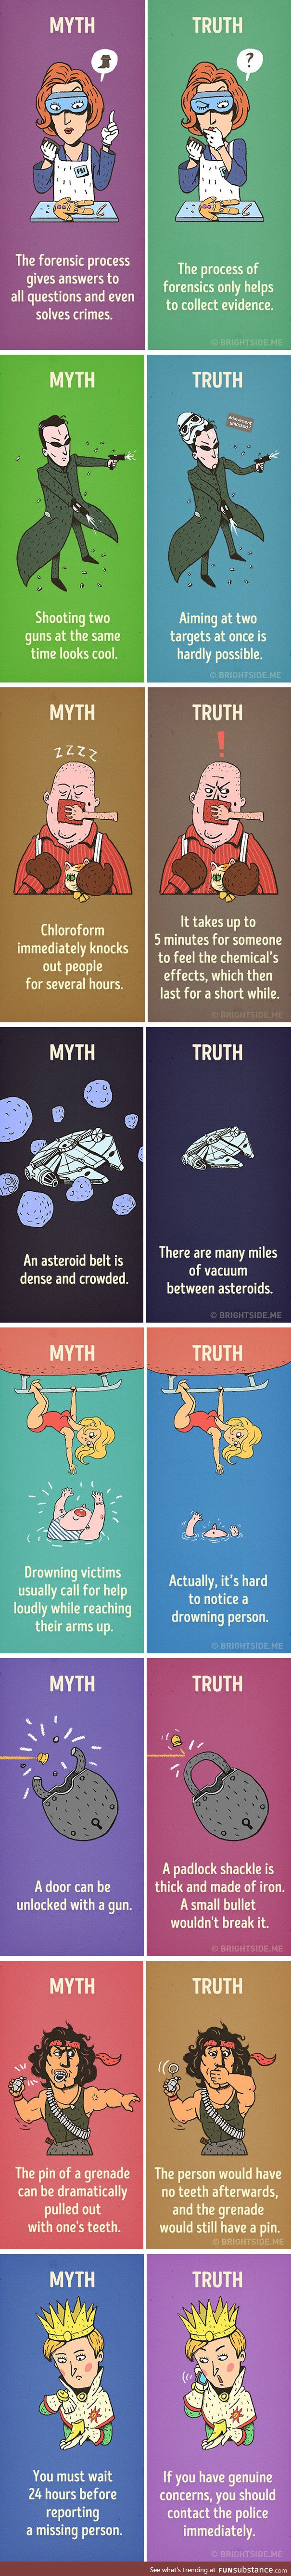 Myth and Truth